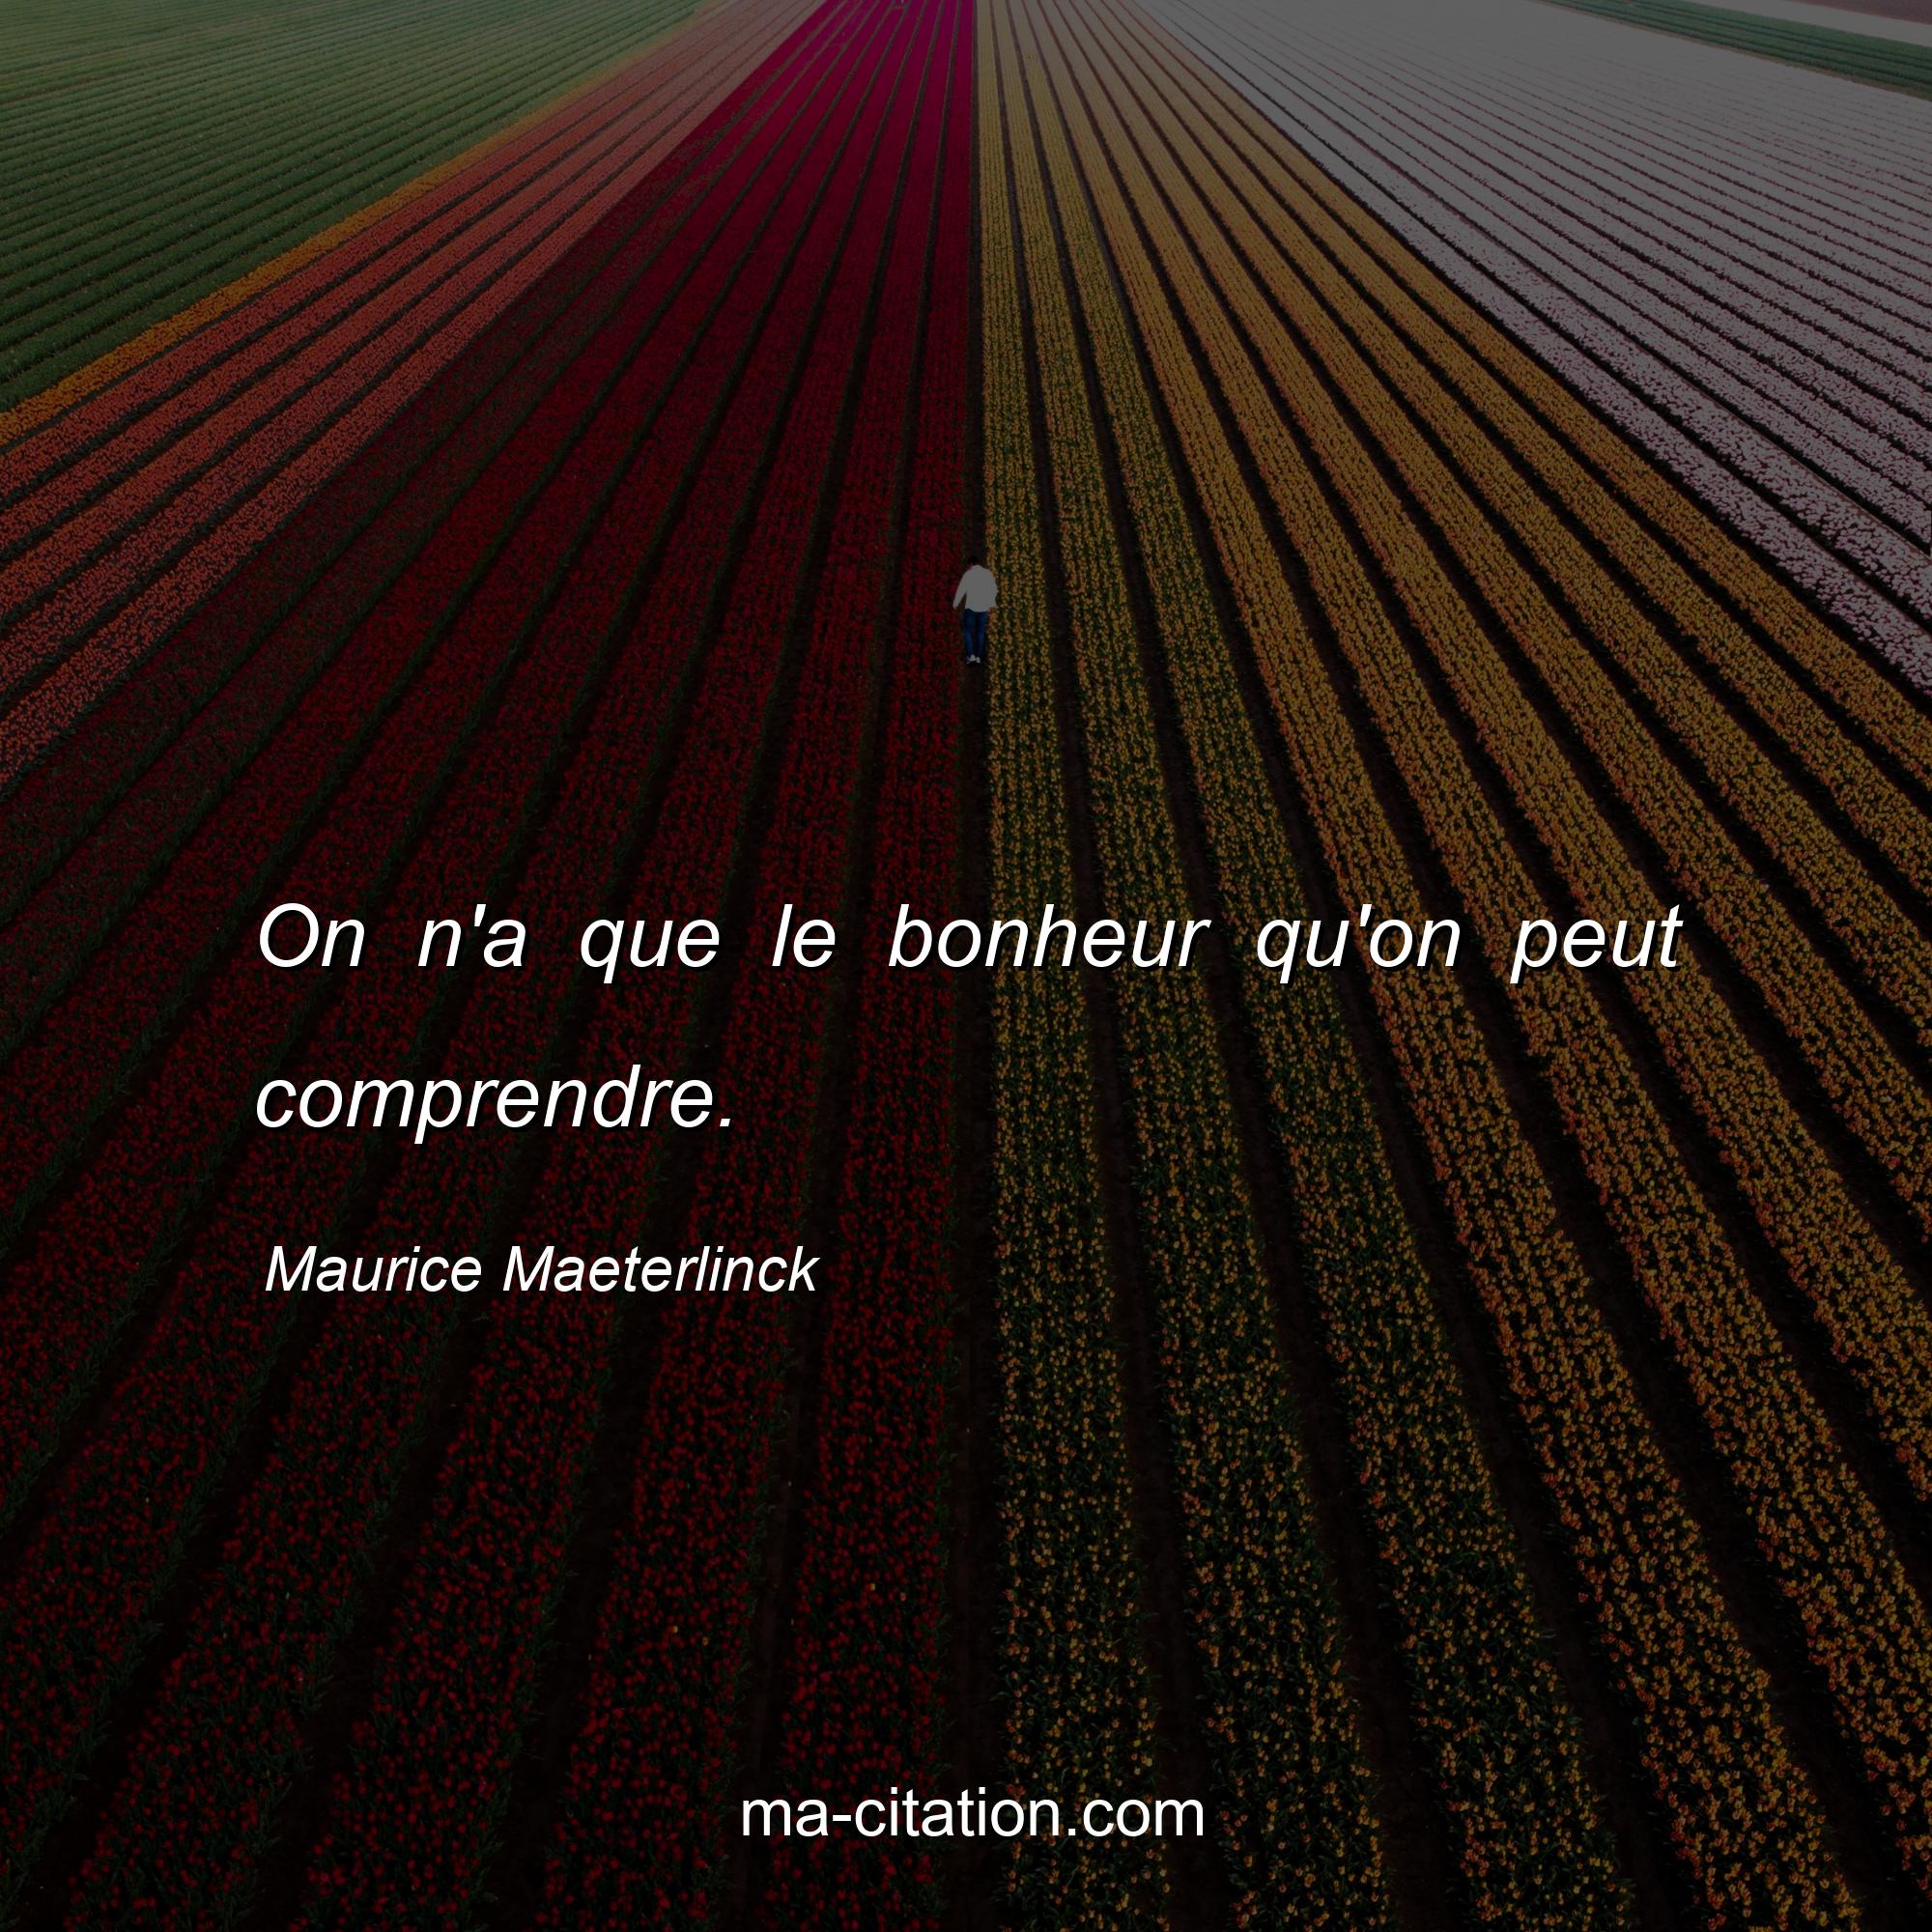 Maurice Maeterlinck : On n'a que le bonheur qu'on peut comprendre.